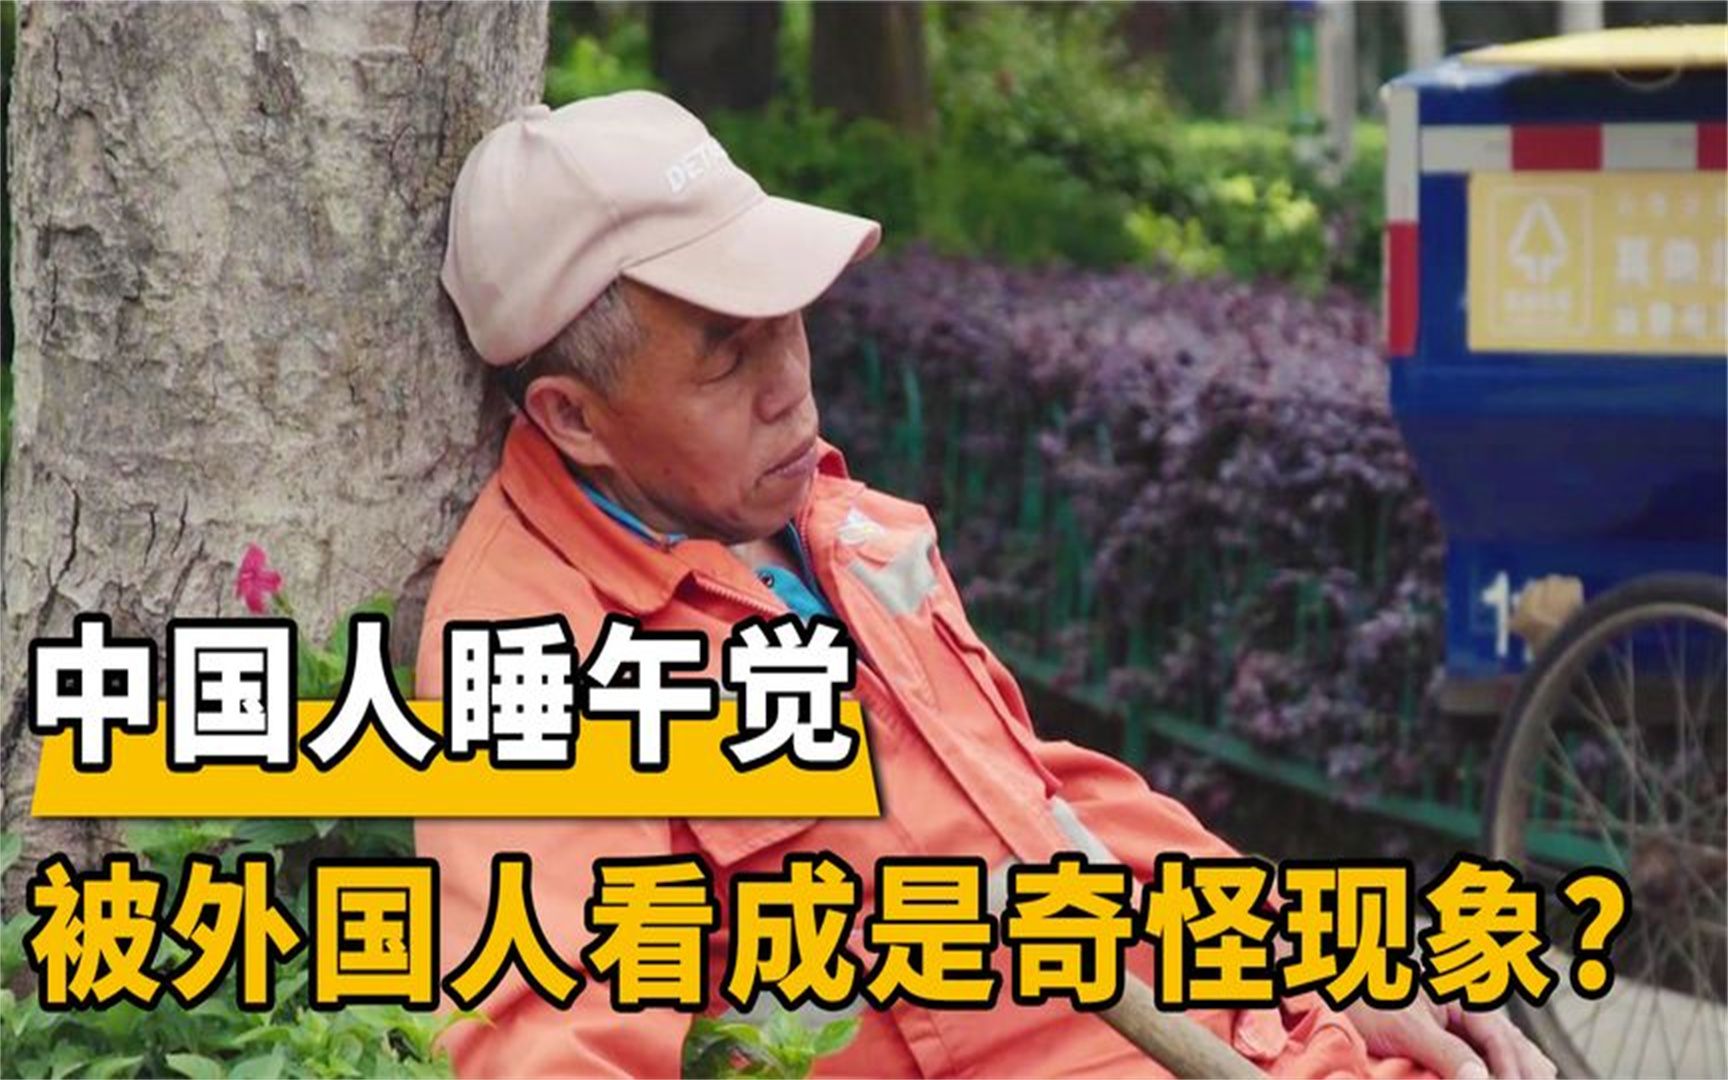 中国人睡午觉，被老外看成是“迷惑行为”？听听各国网友怎么说